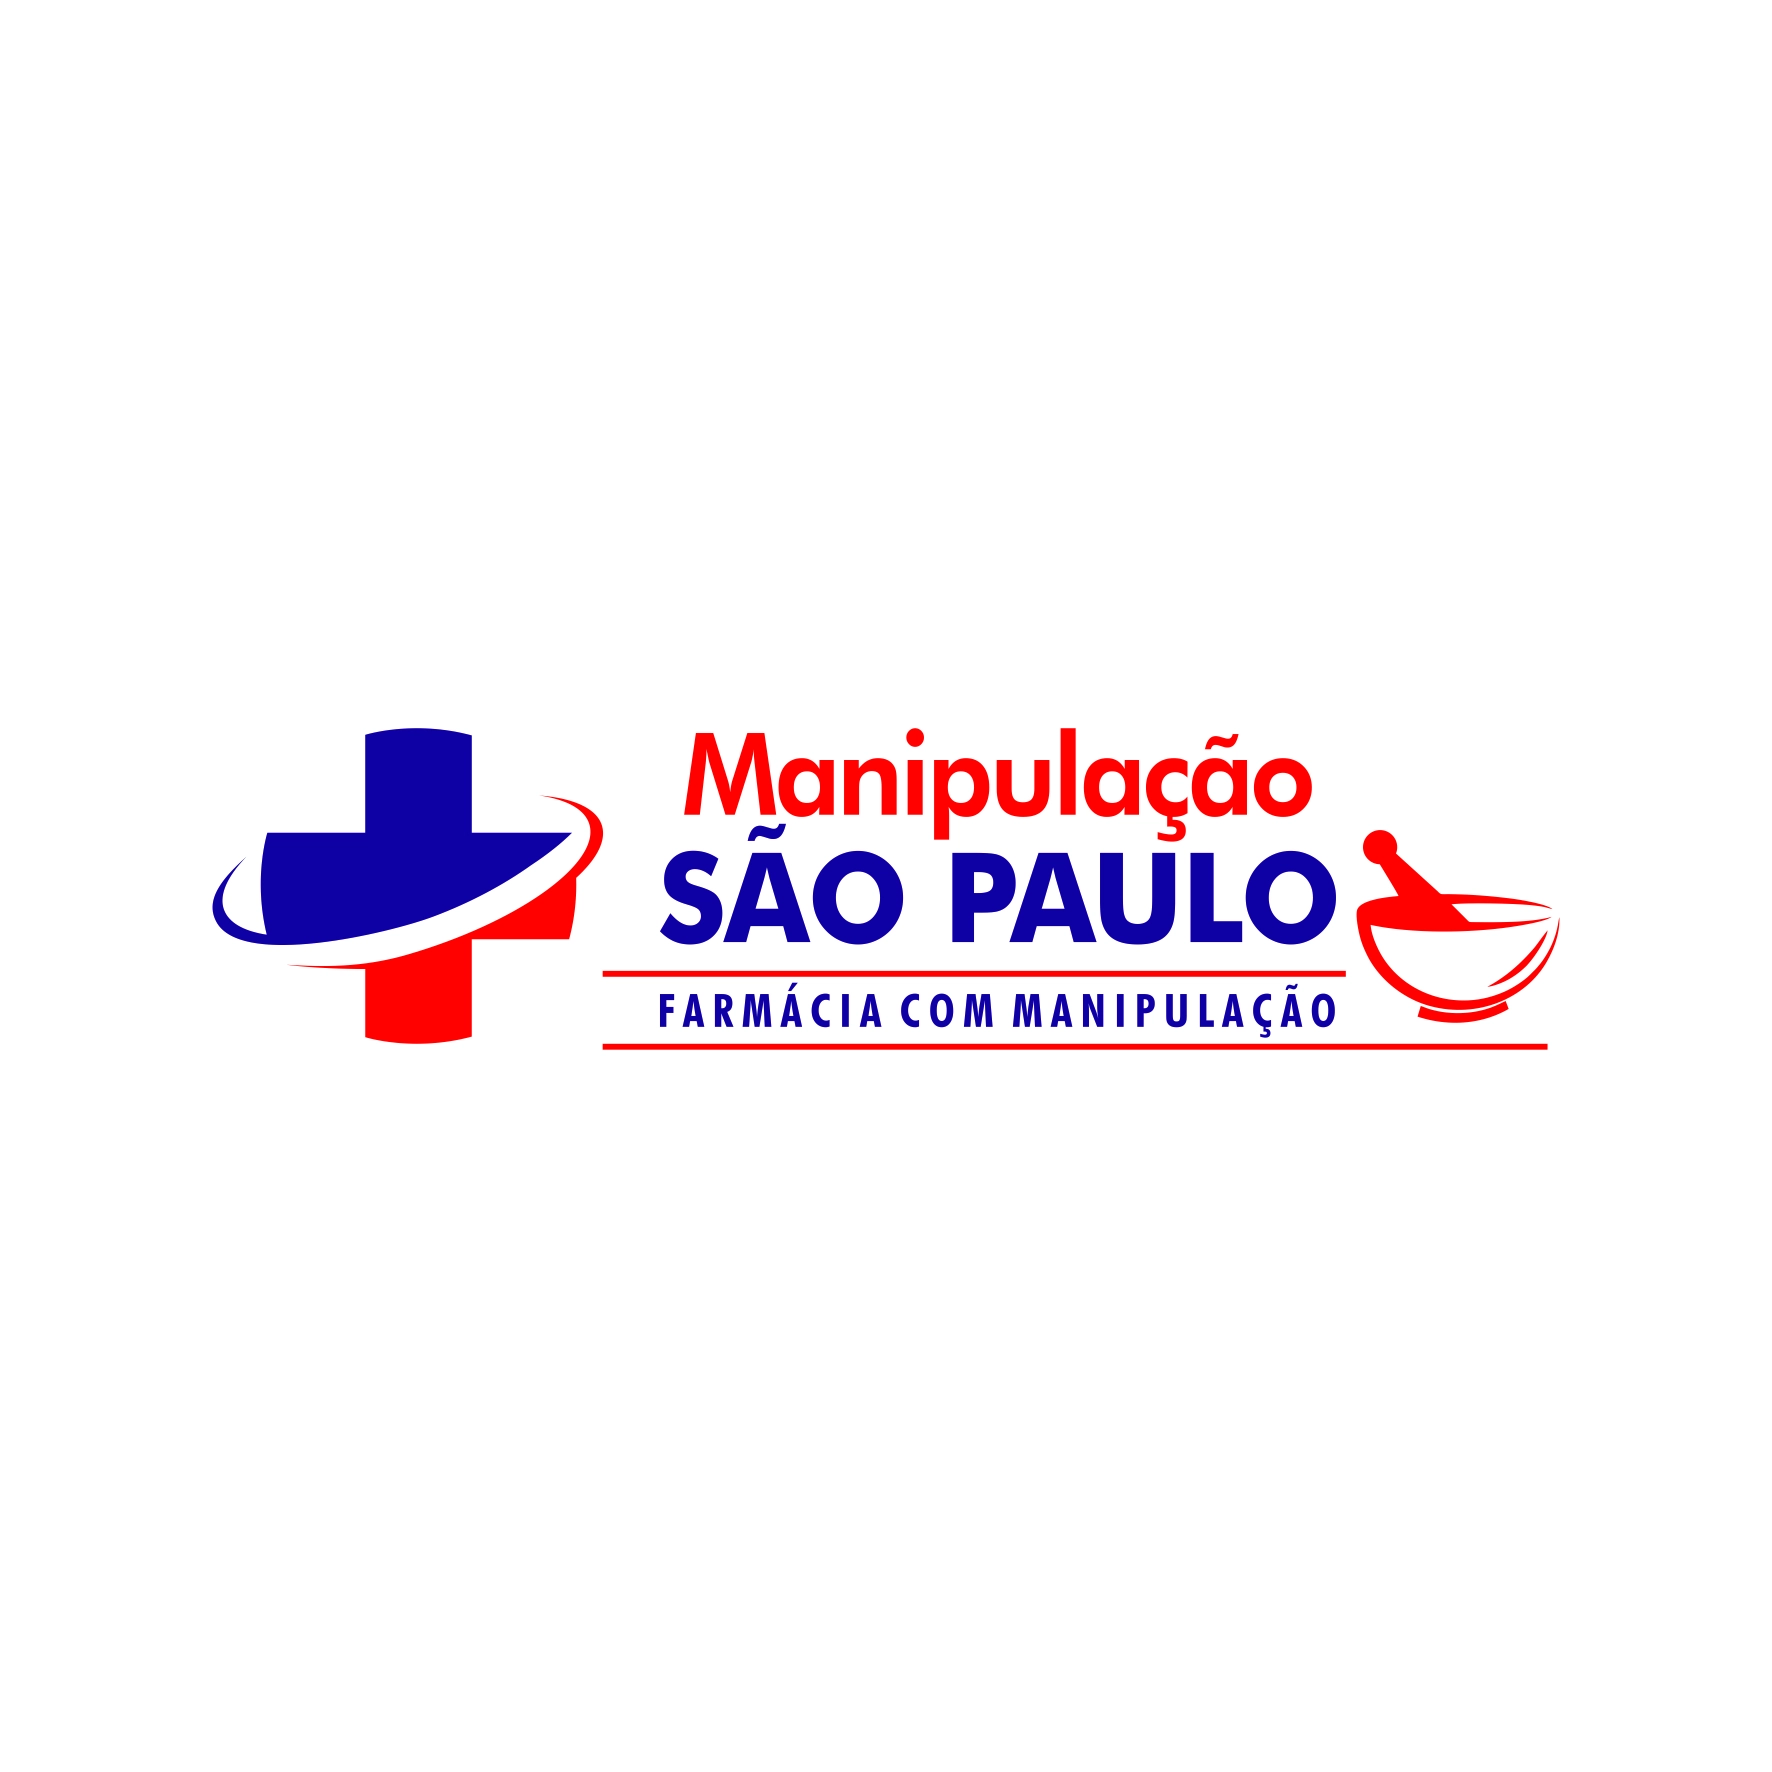 DROGARIA SÃO PAULO